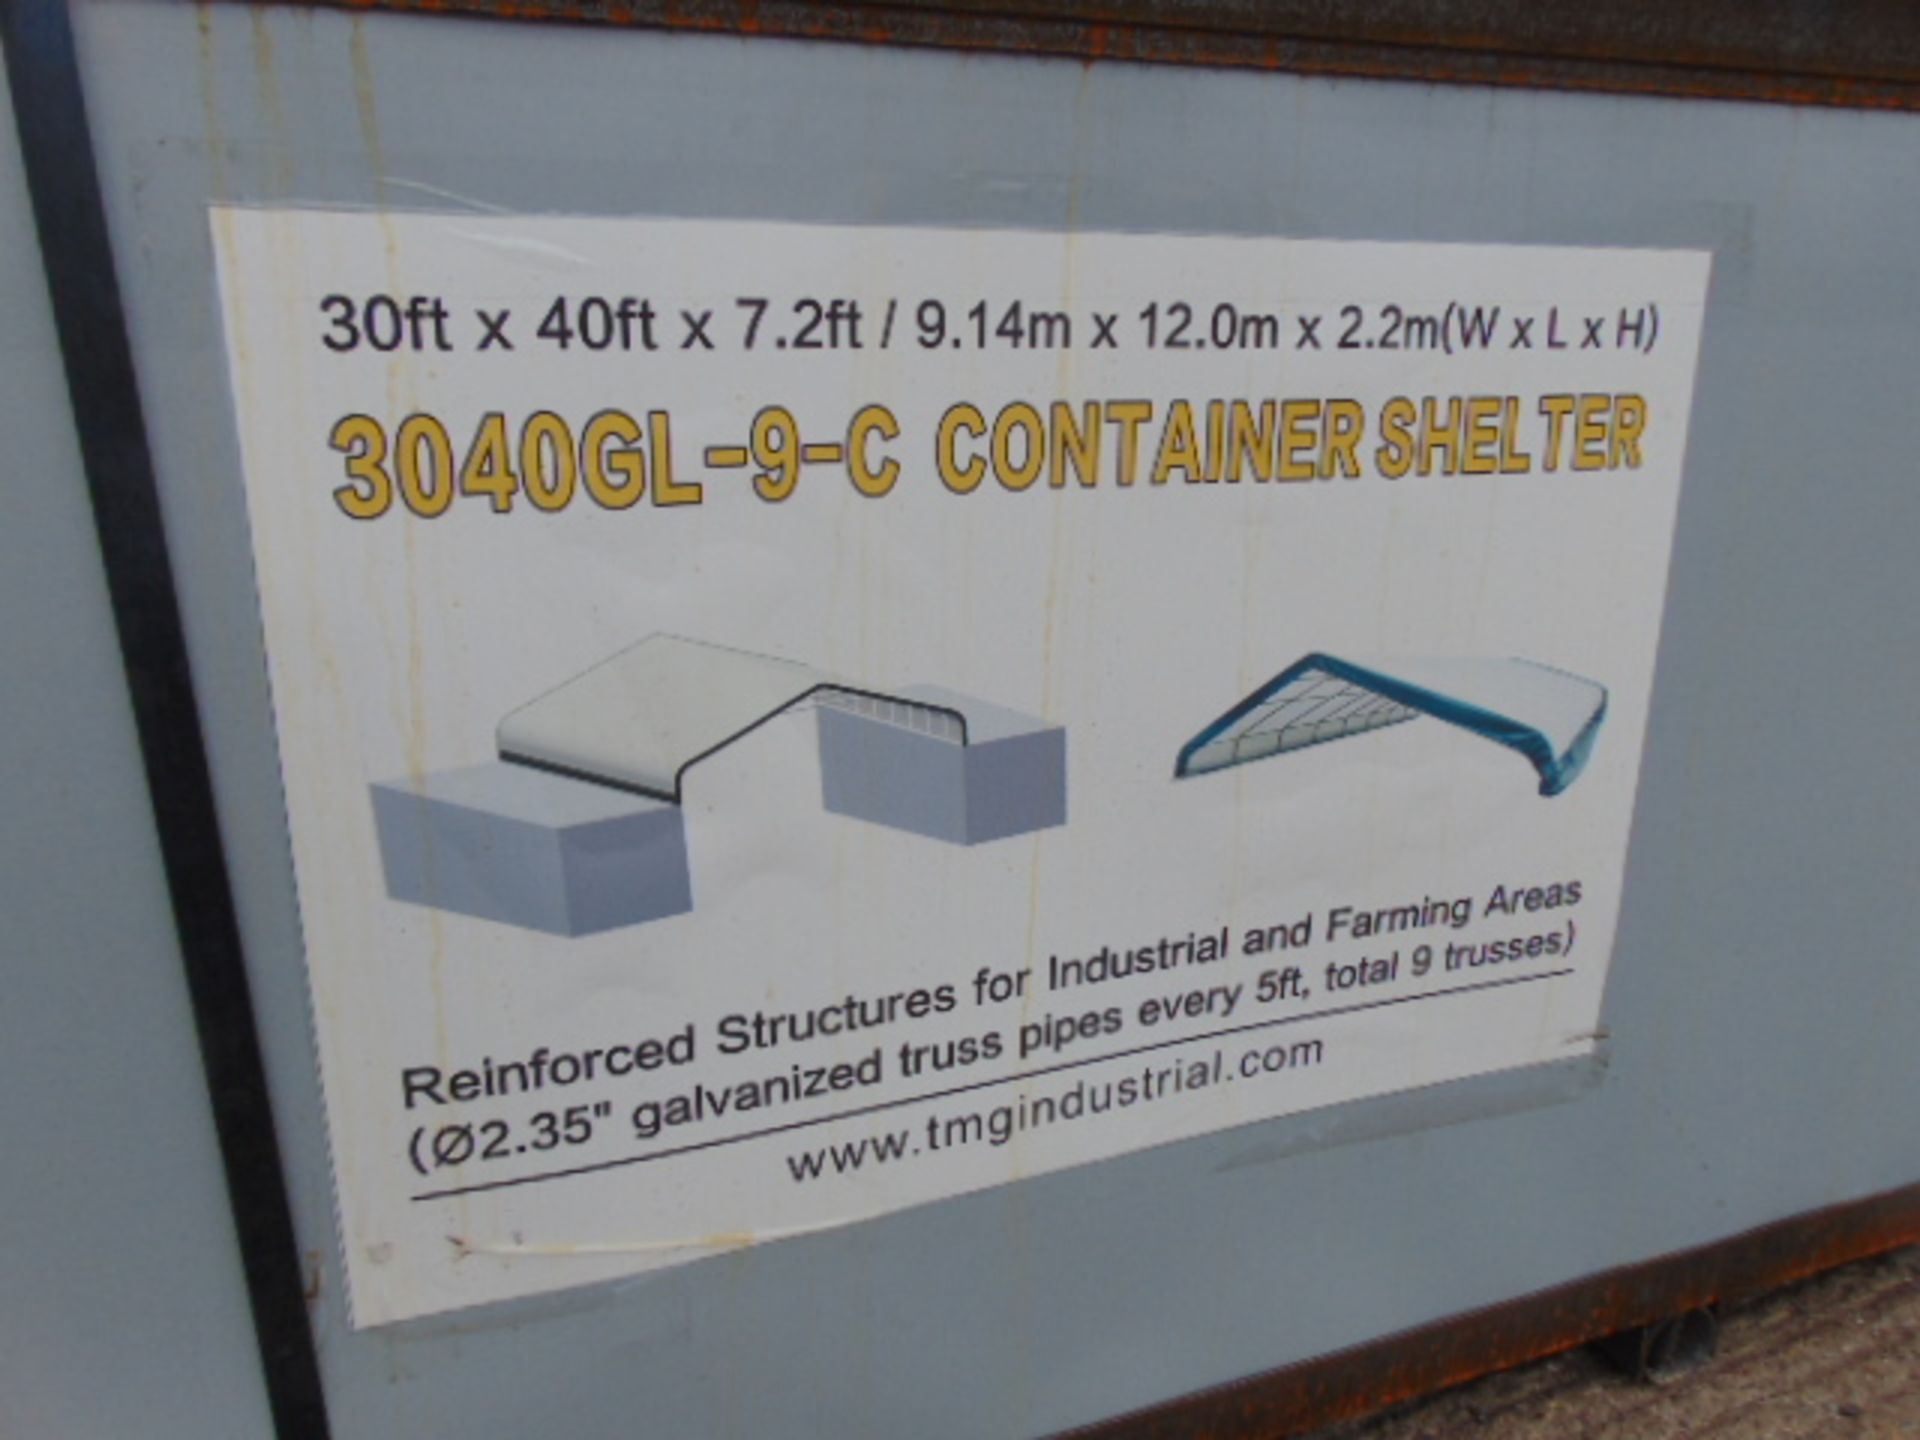 Container Shelter 30'W x 40'L x 7.2' H P/No 3040GL-9-C - Bild 2 aus 7